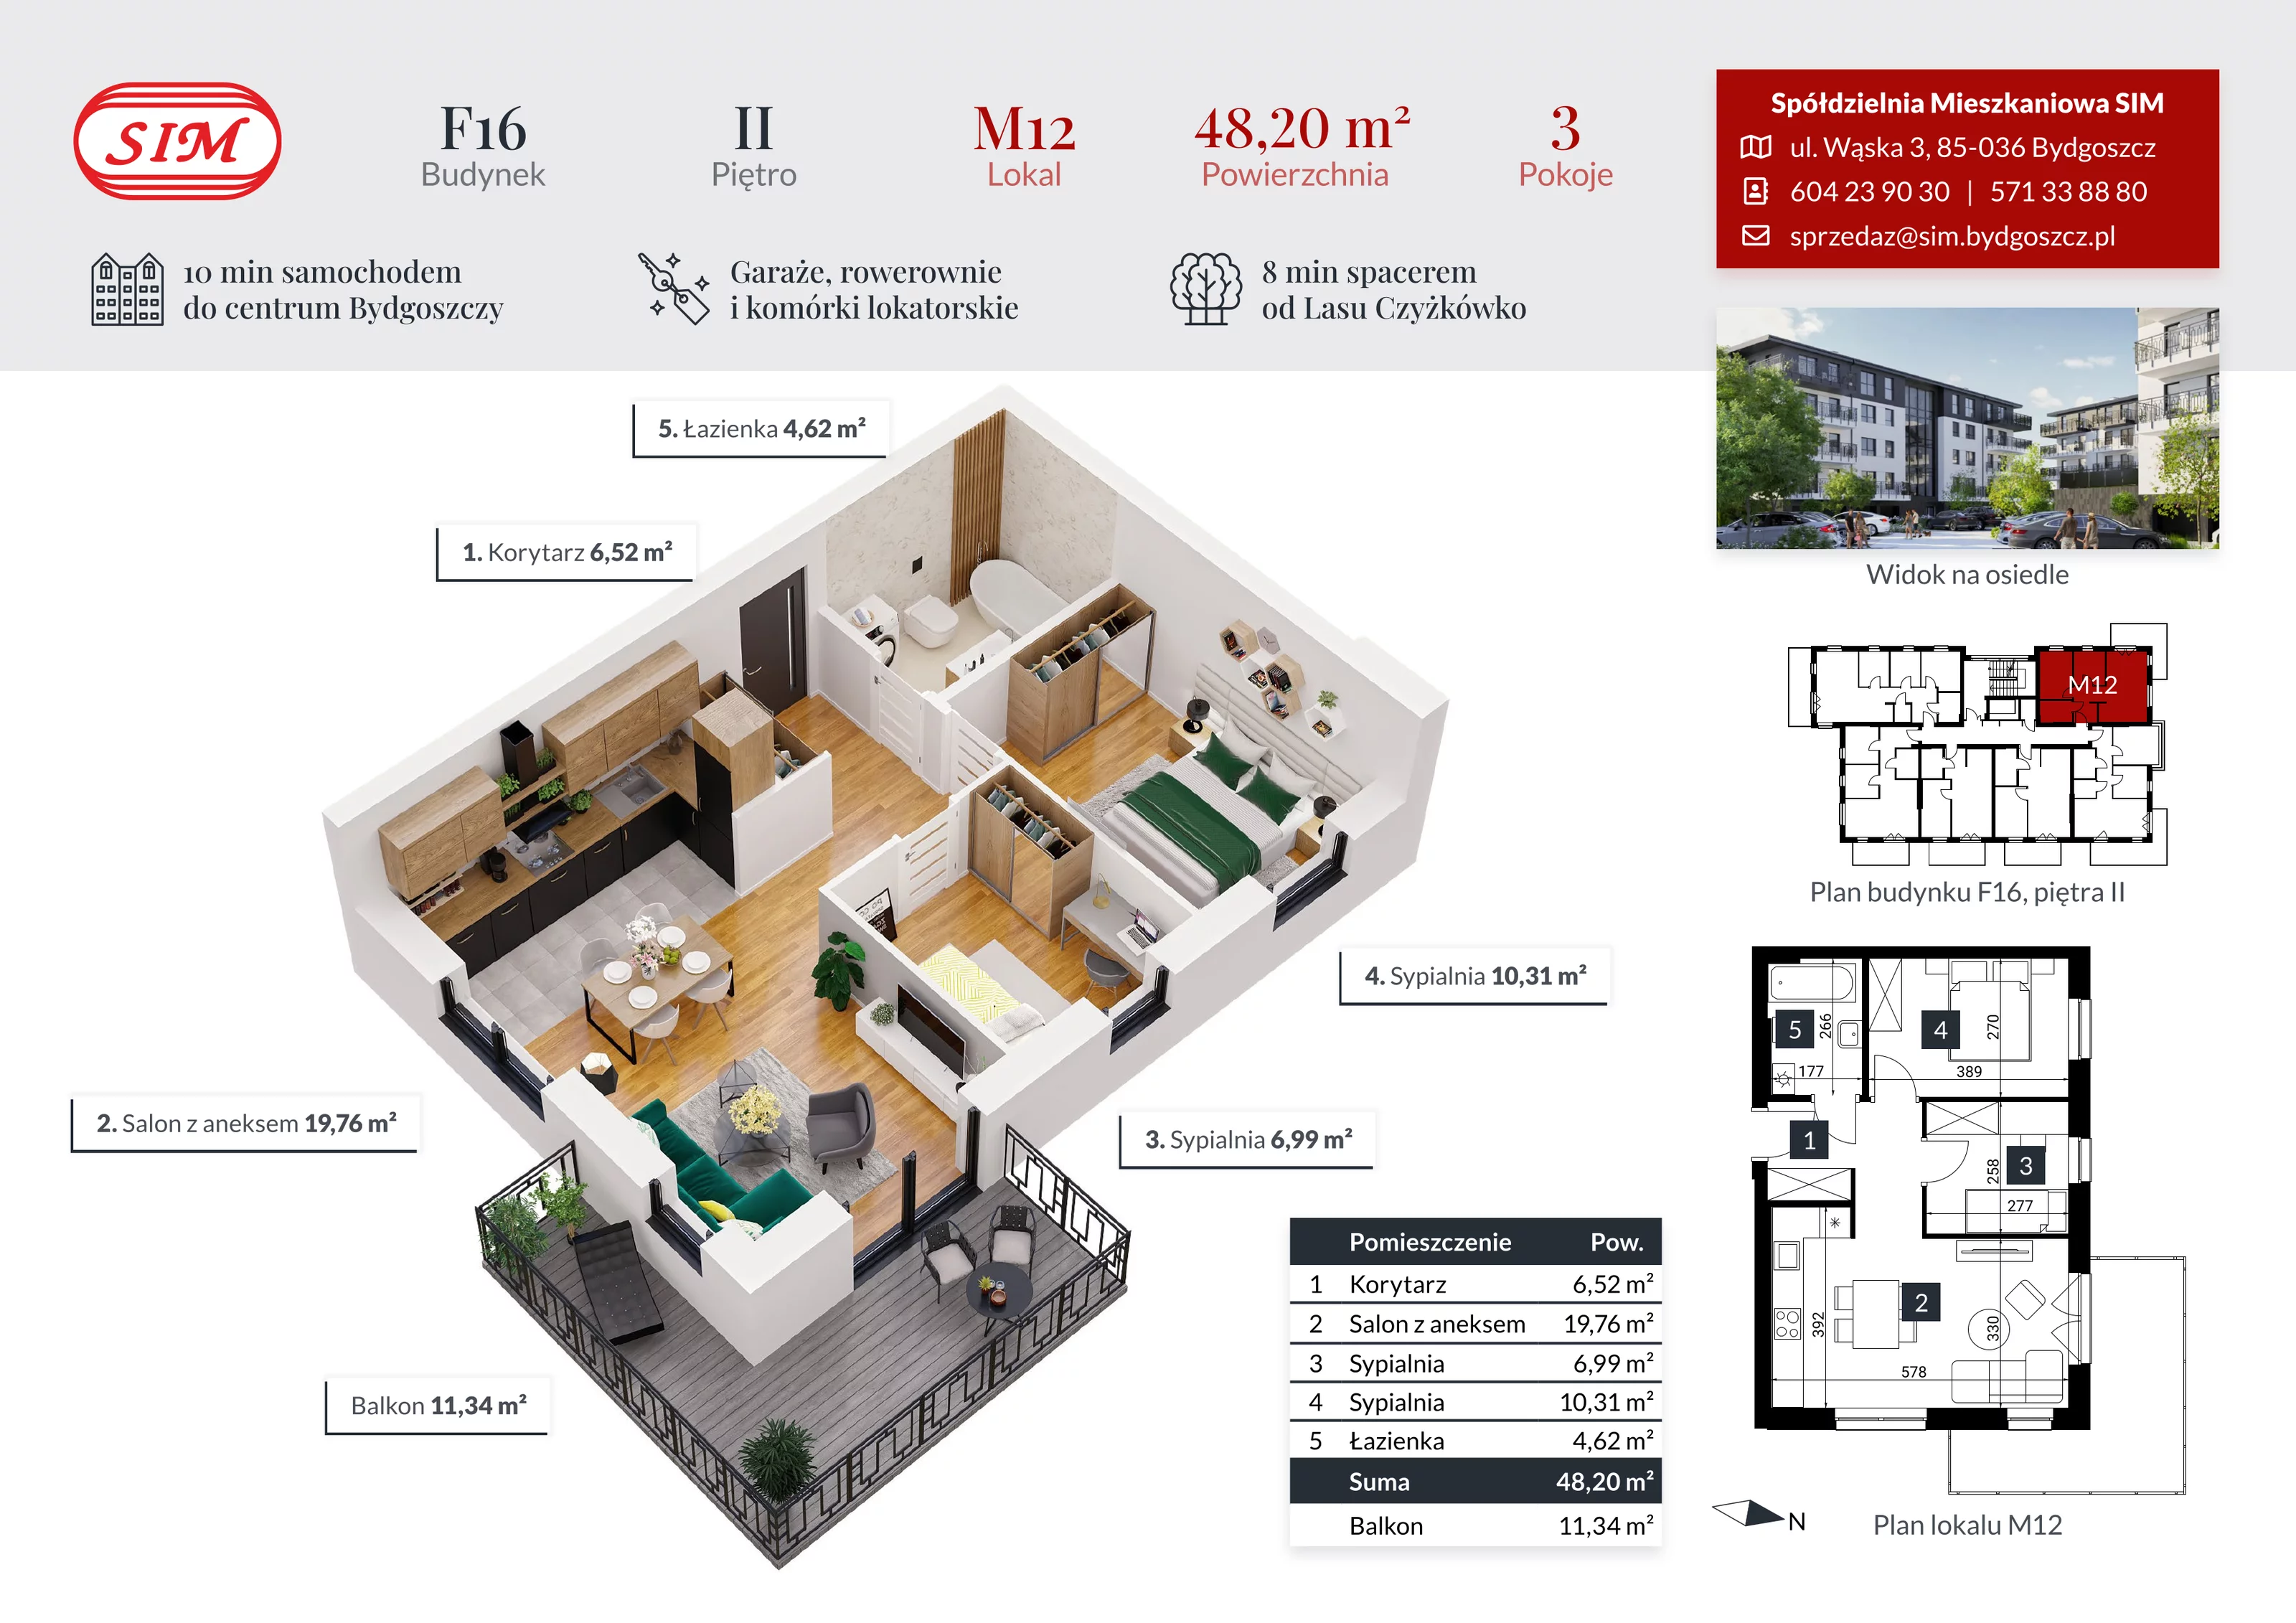 Mieszkanie 48,20 m², piętro 2, oferta nr F16-M12, Tęczowy Zakątek, Bydgoszcz, Czyżkówko, ul. Filtrowa